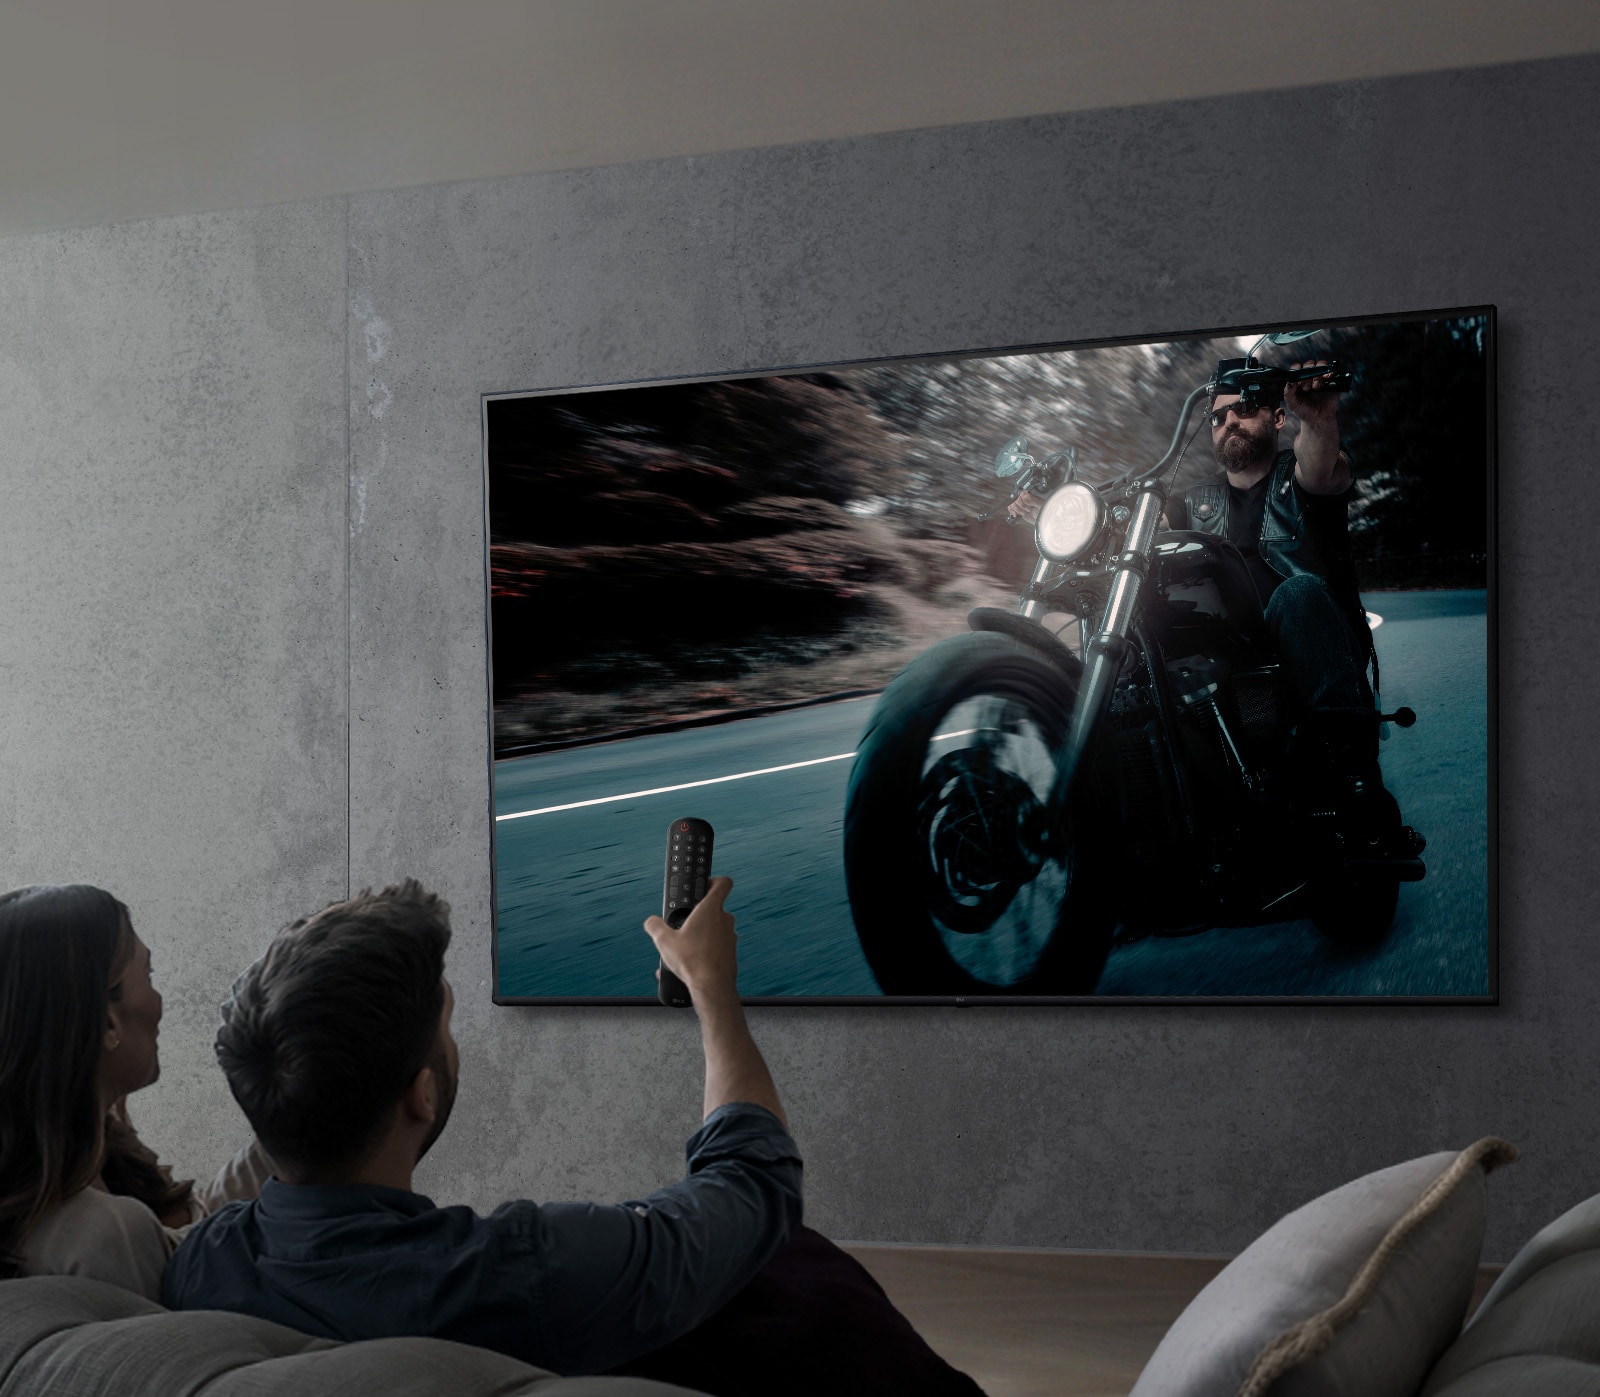 LG Smart TV 55 UR78 4K al mejor precio